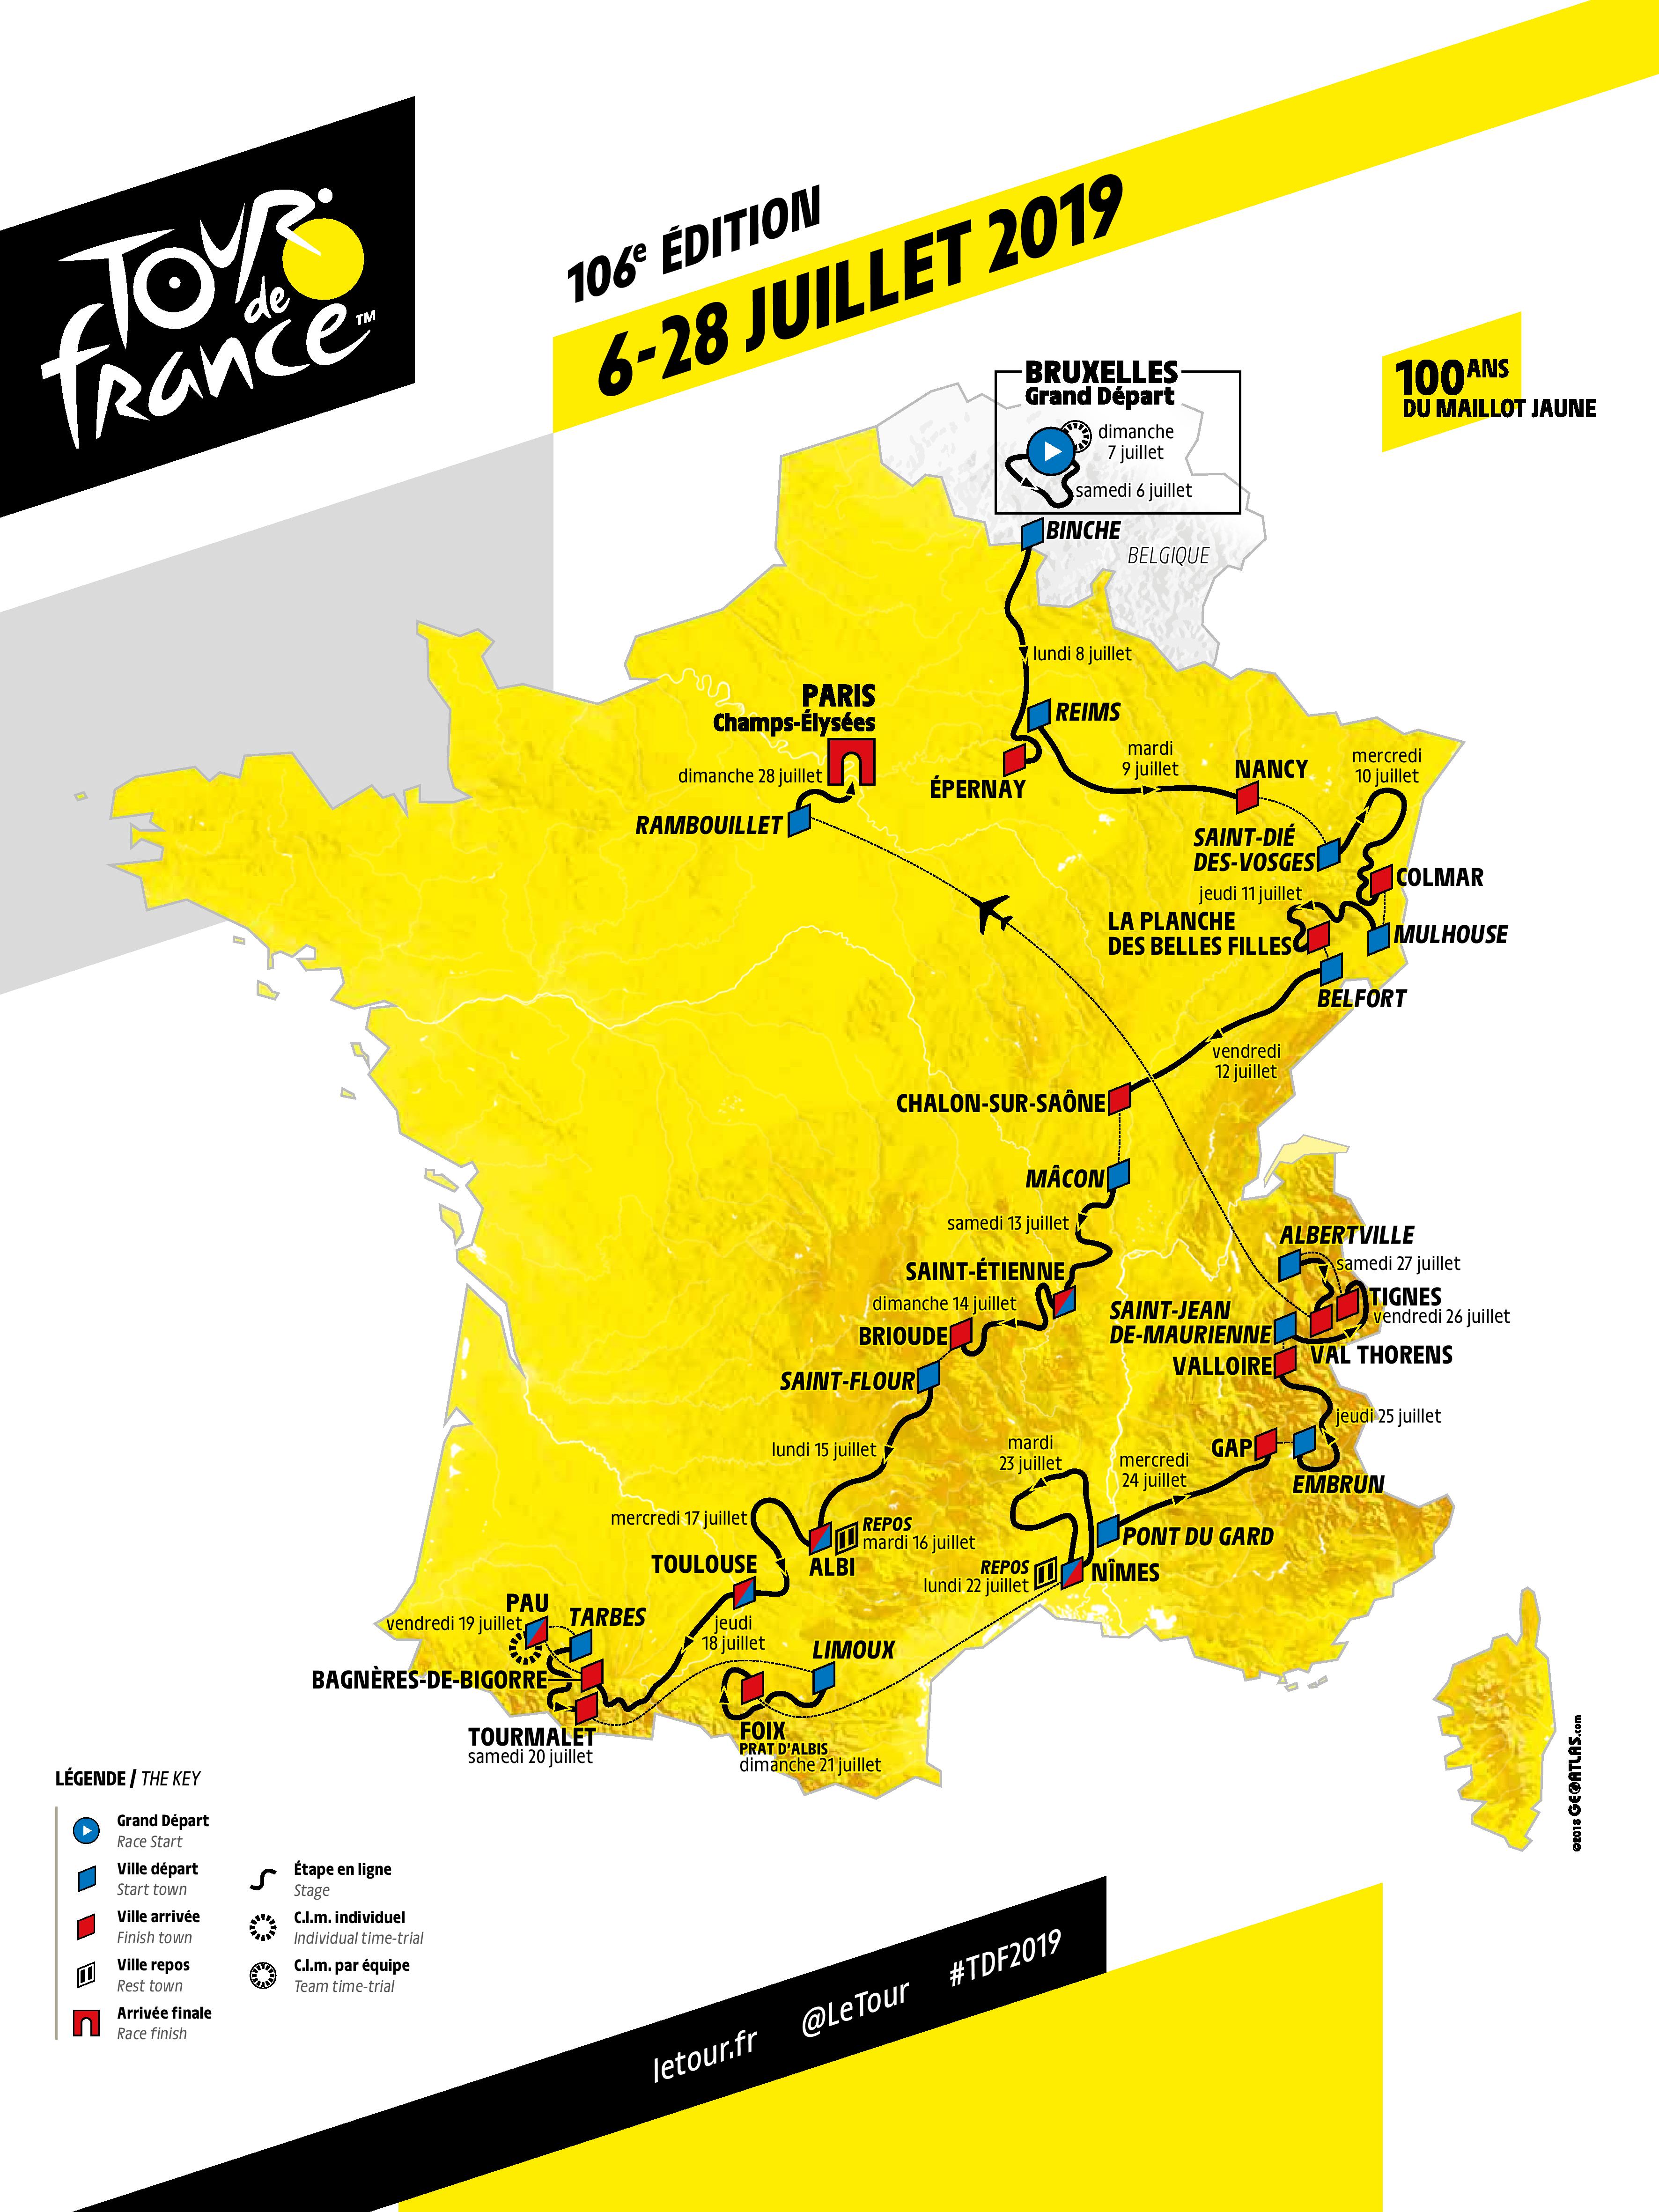 Parcours, prize money, sponsors... Le Tour de France 2019 se dévoile